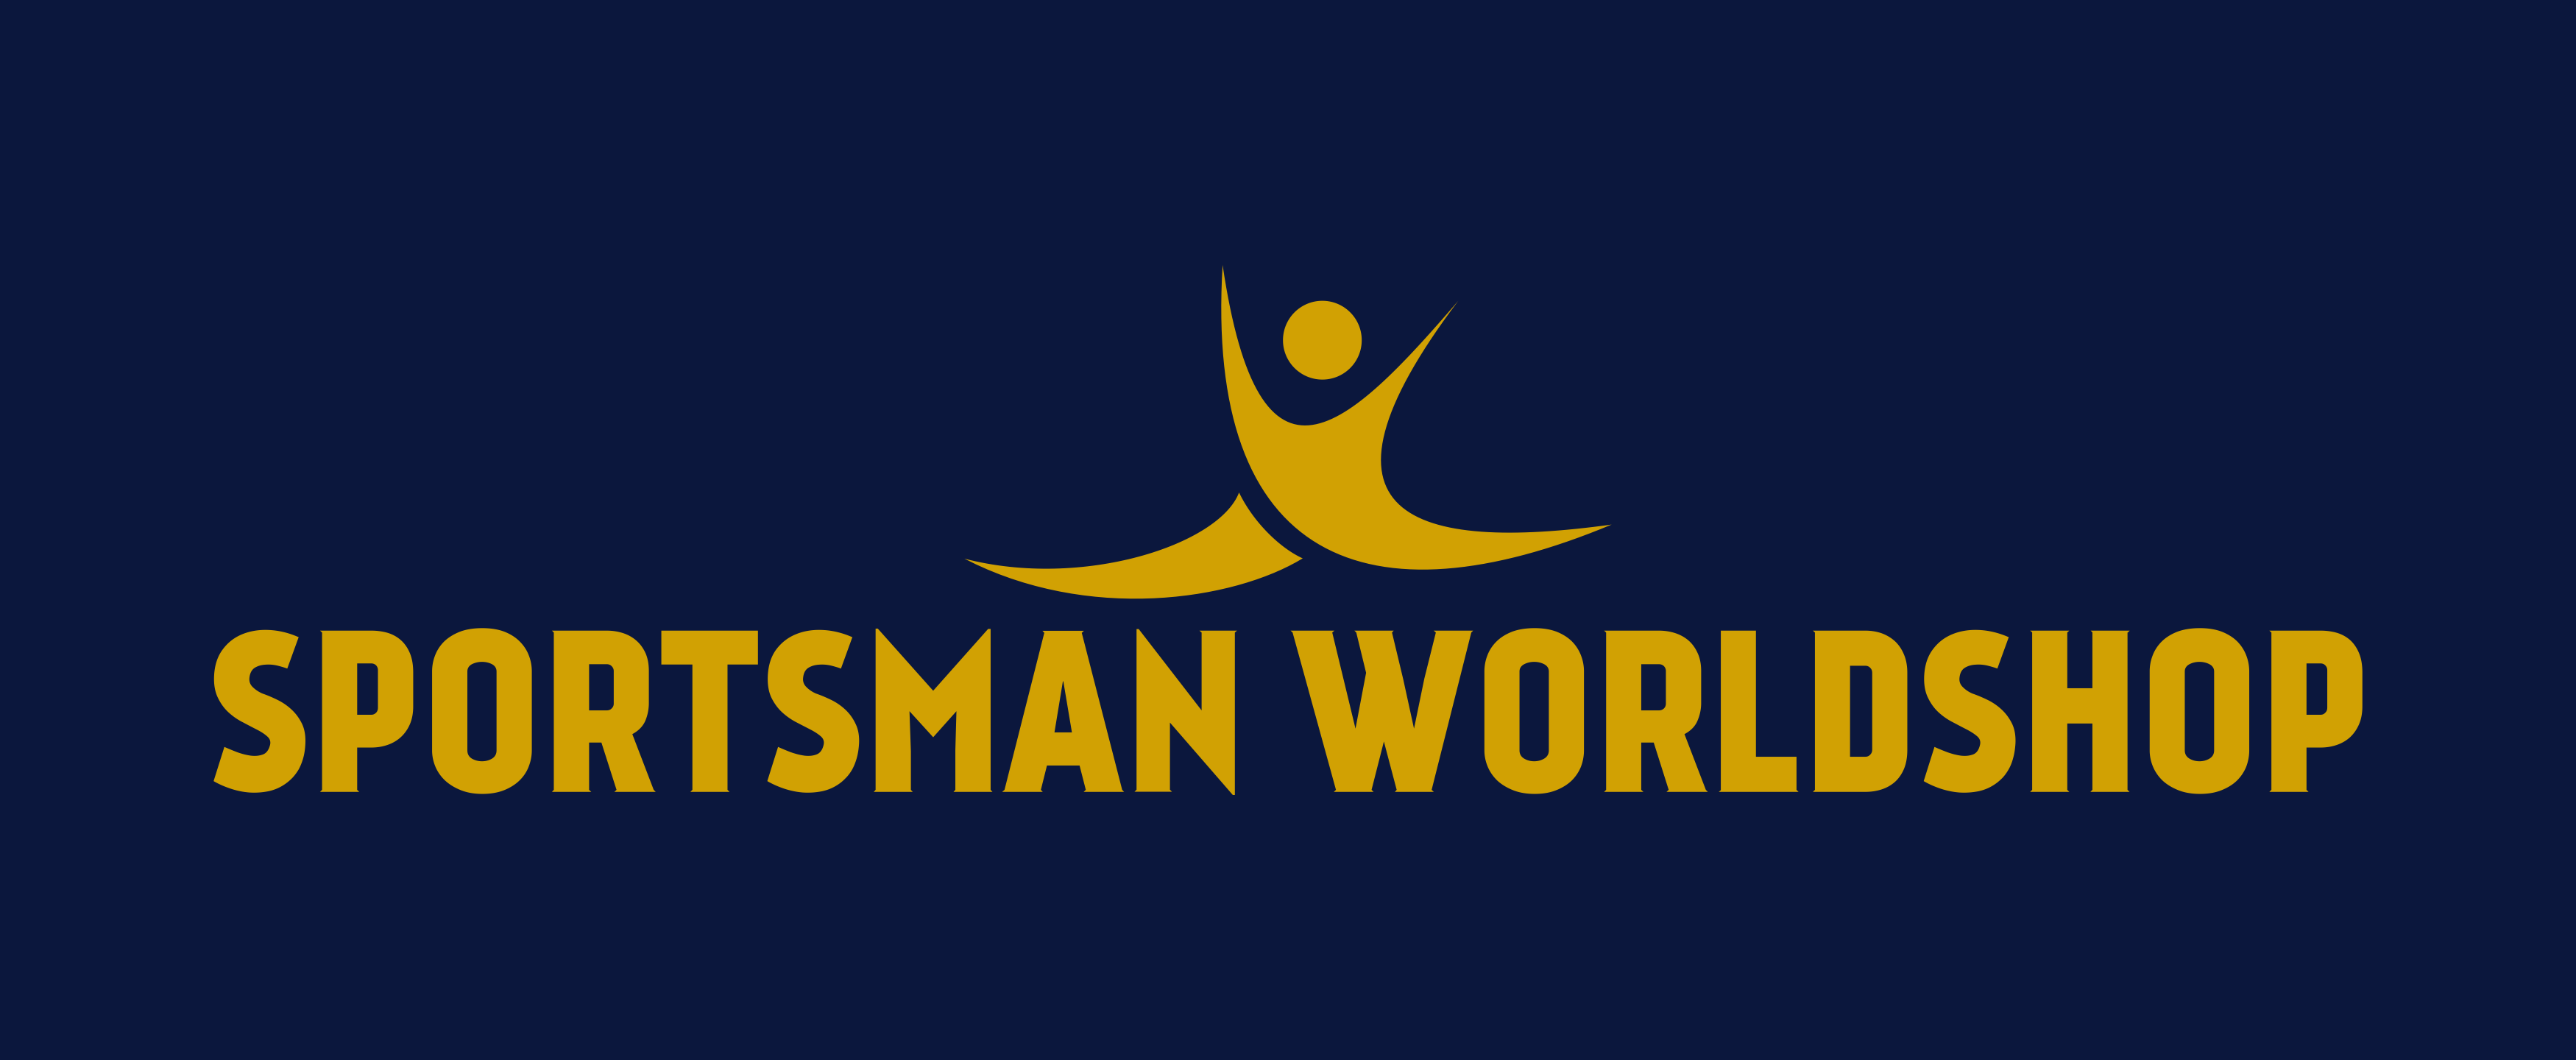 Sportsman Worldshop